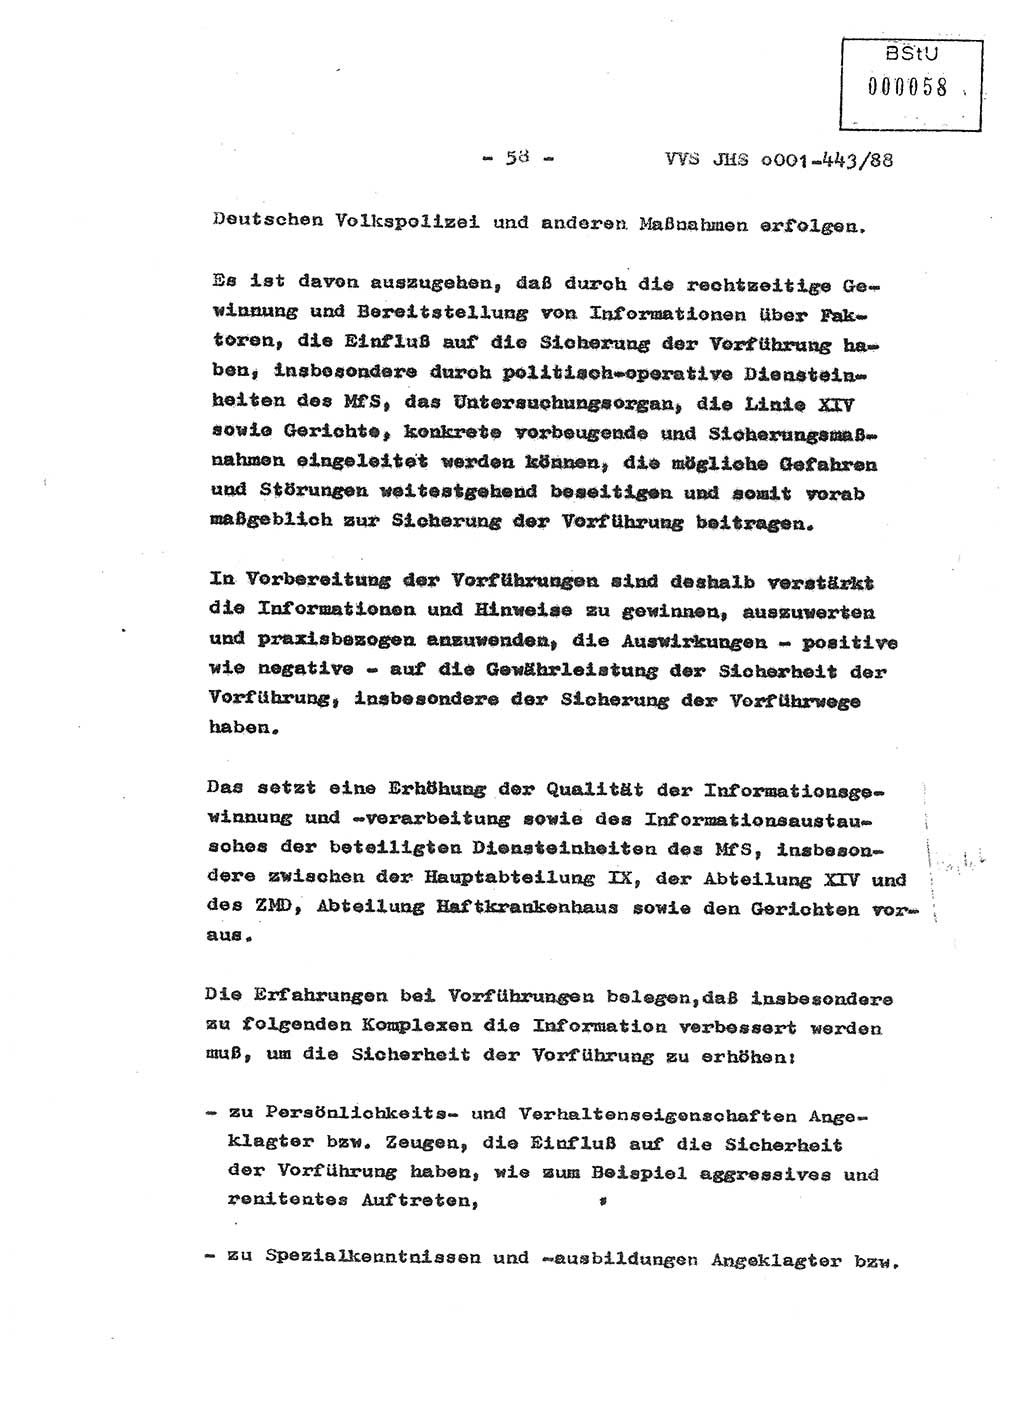 Diplomarbeit Hauptmann Michael Rast (Abt. ⅩⅣ), Major Bernd Rahaus (Abt. ⅩⅣ), Ministerium für Staatssicherheit (MfS) [Deutsche Demokratische Republik (DDR)], Juristische Hochschule (JHS), Vertrauliche Verschlußsache (VVS) o001-443/88, Potsdam 1988, Seite 58 (Dipl.-Arb. MfS DDR JHS VVS o001-443/88 1988, S. 58)